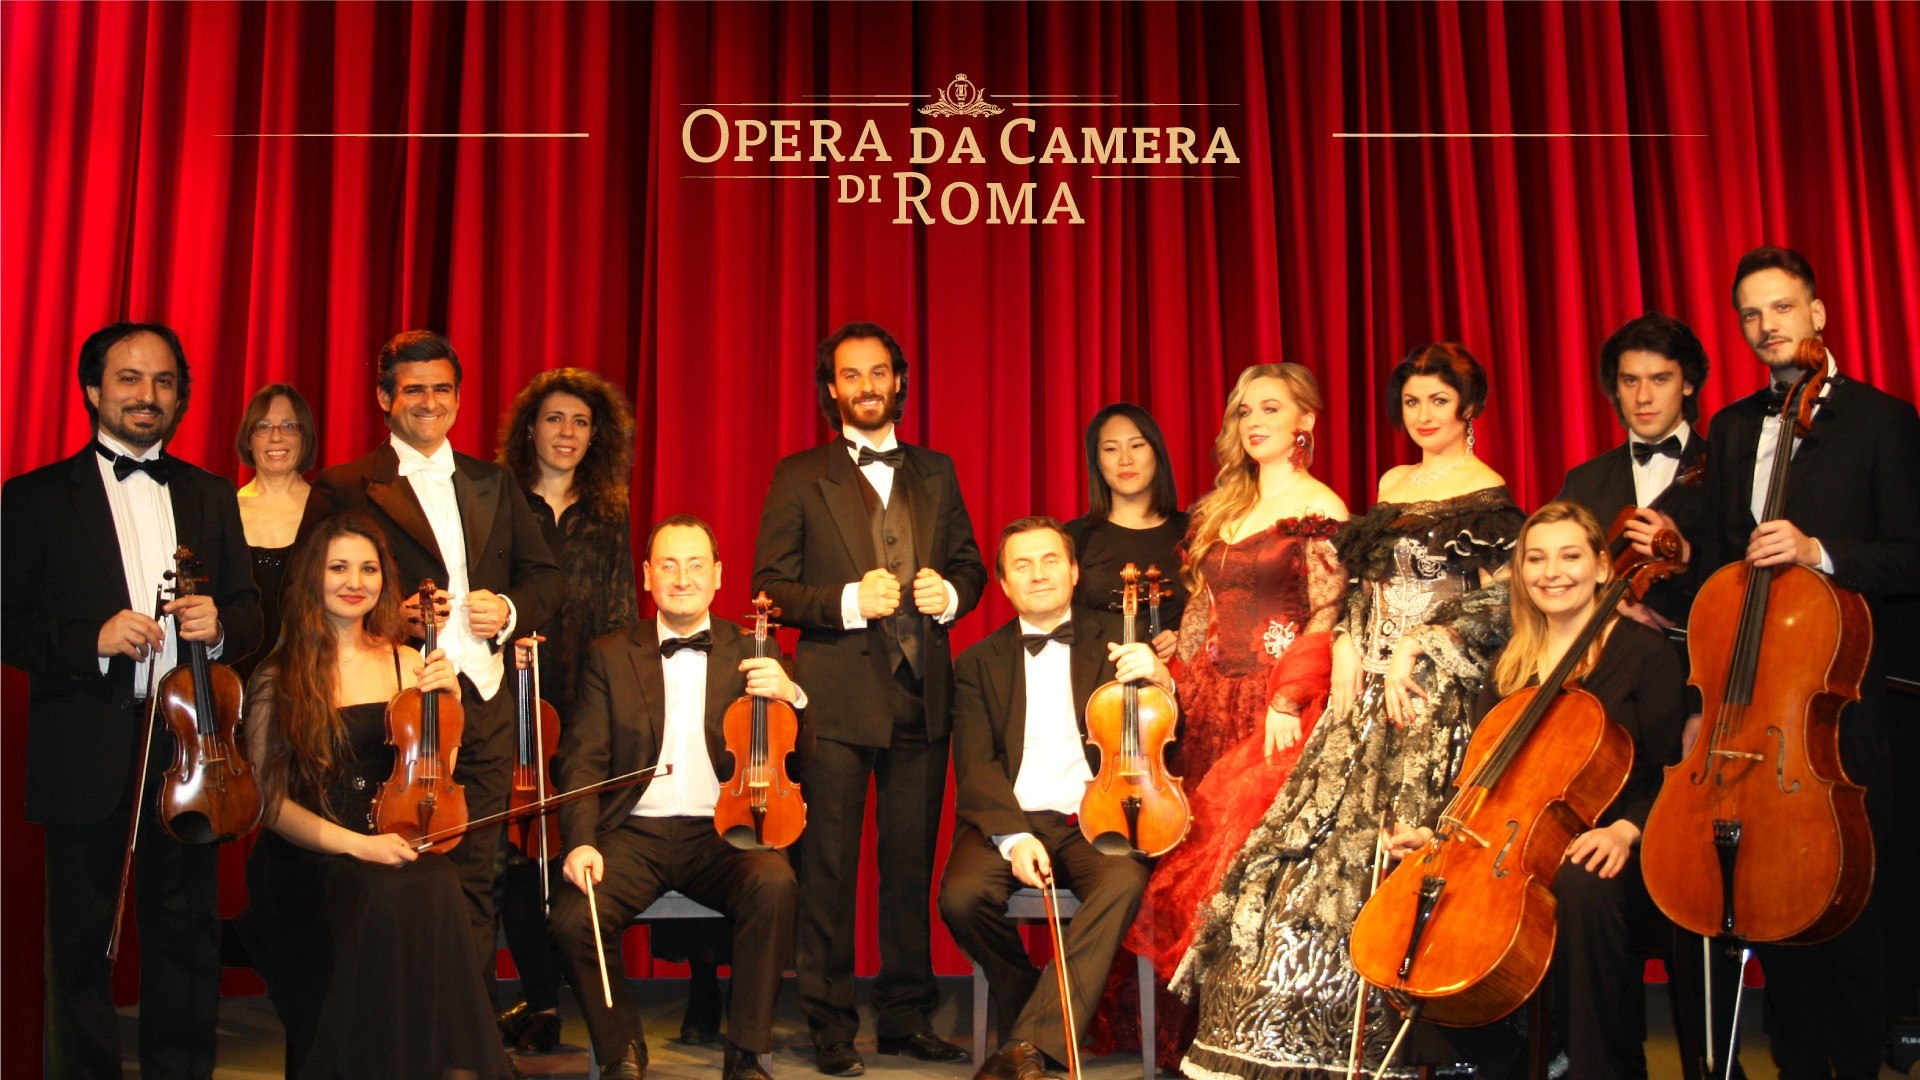 Das Konzert der schönsten Opernarien